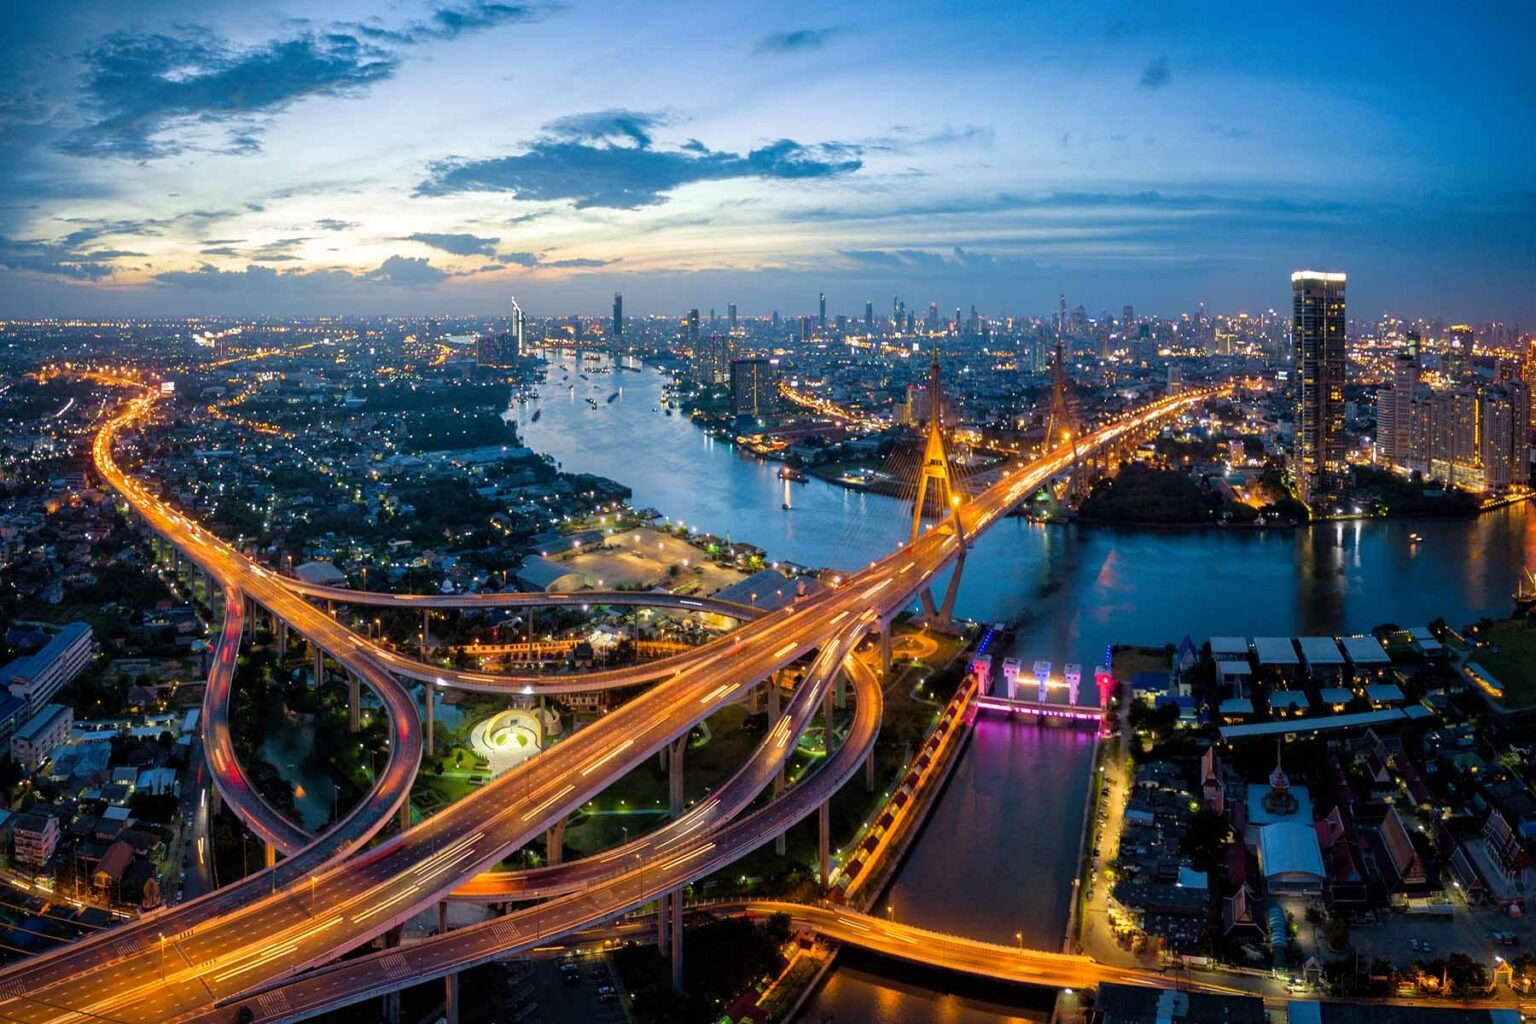 An aerial view of Bangkok at night